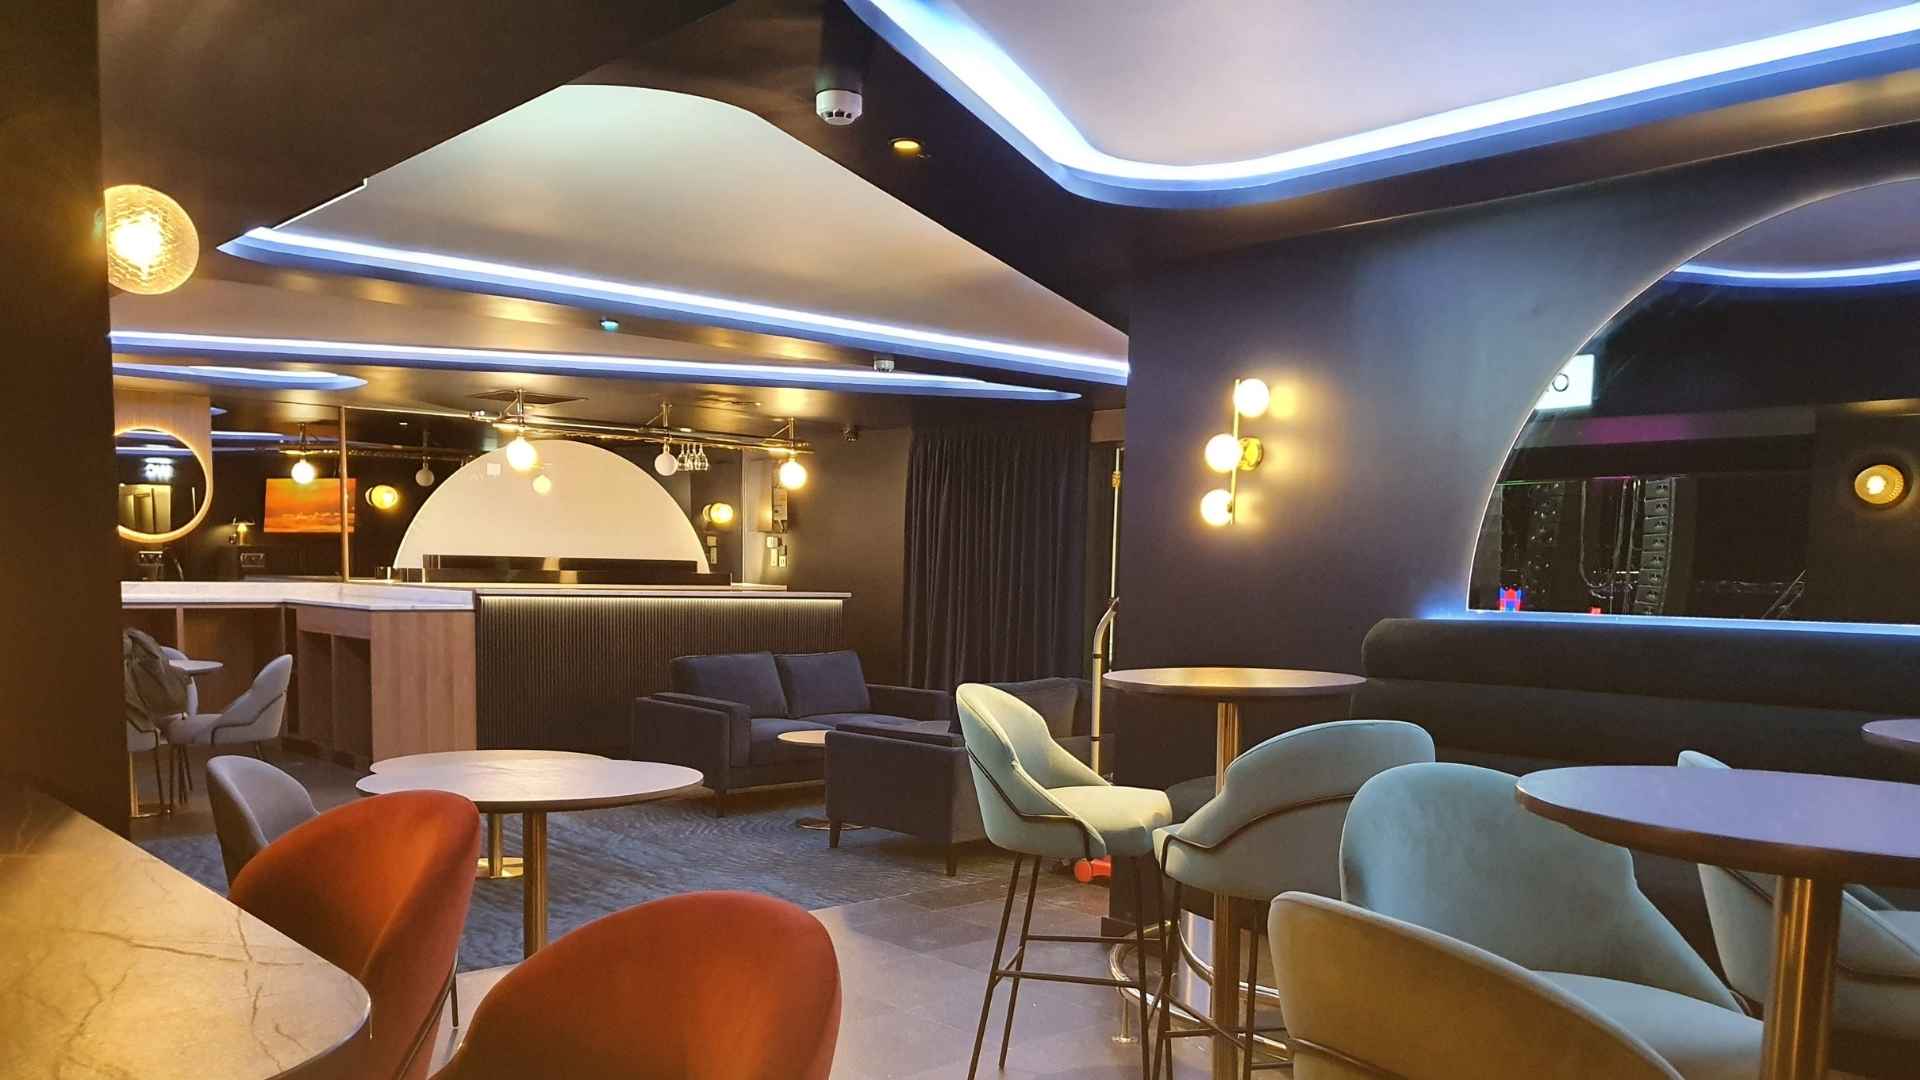 ao arena's executive lounge bar refit